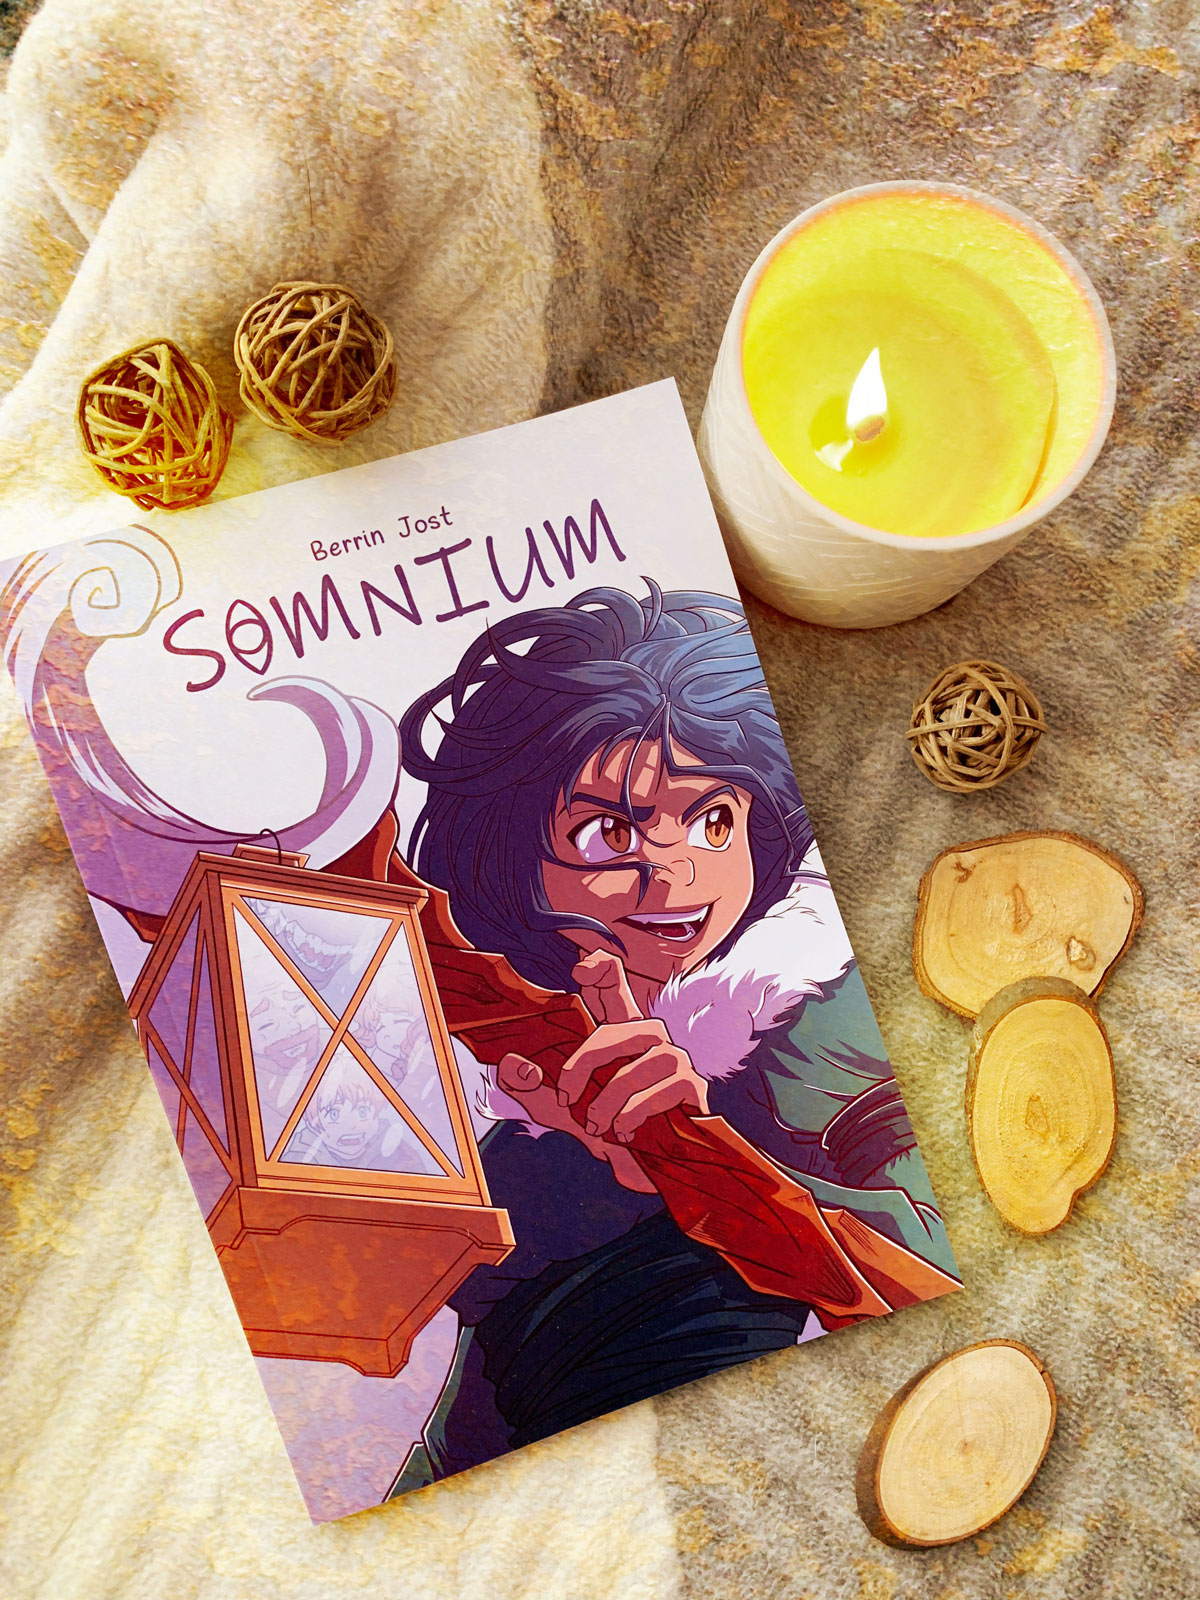 Cover vom Comic "Somnium" ist zu sehen.